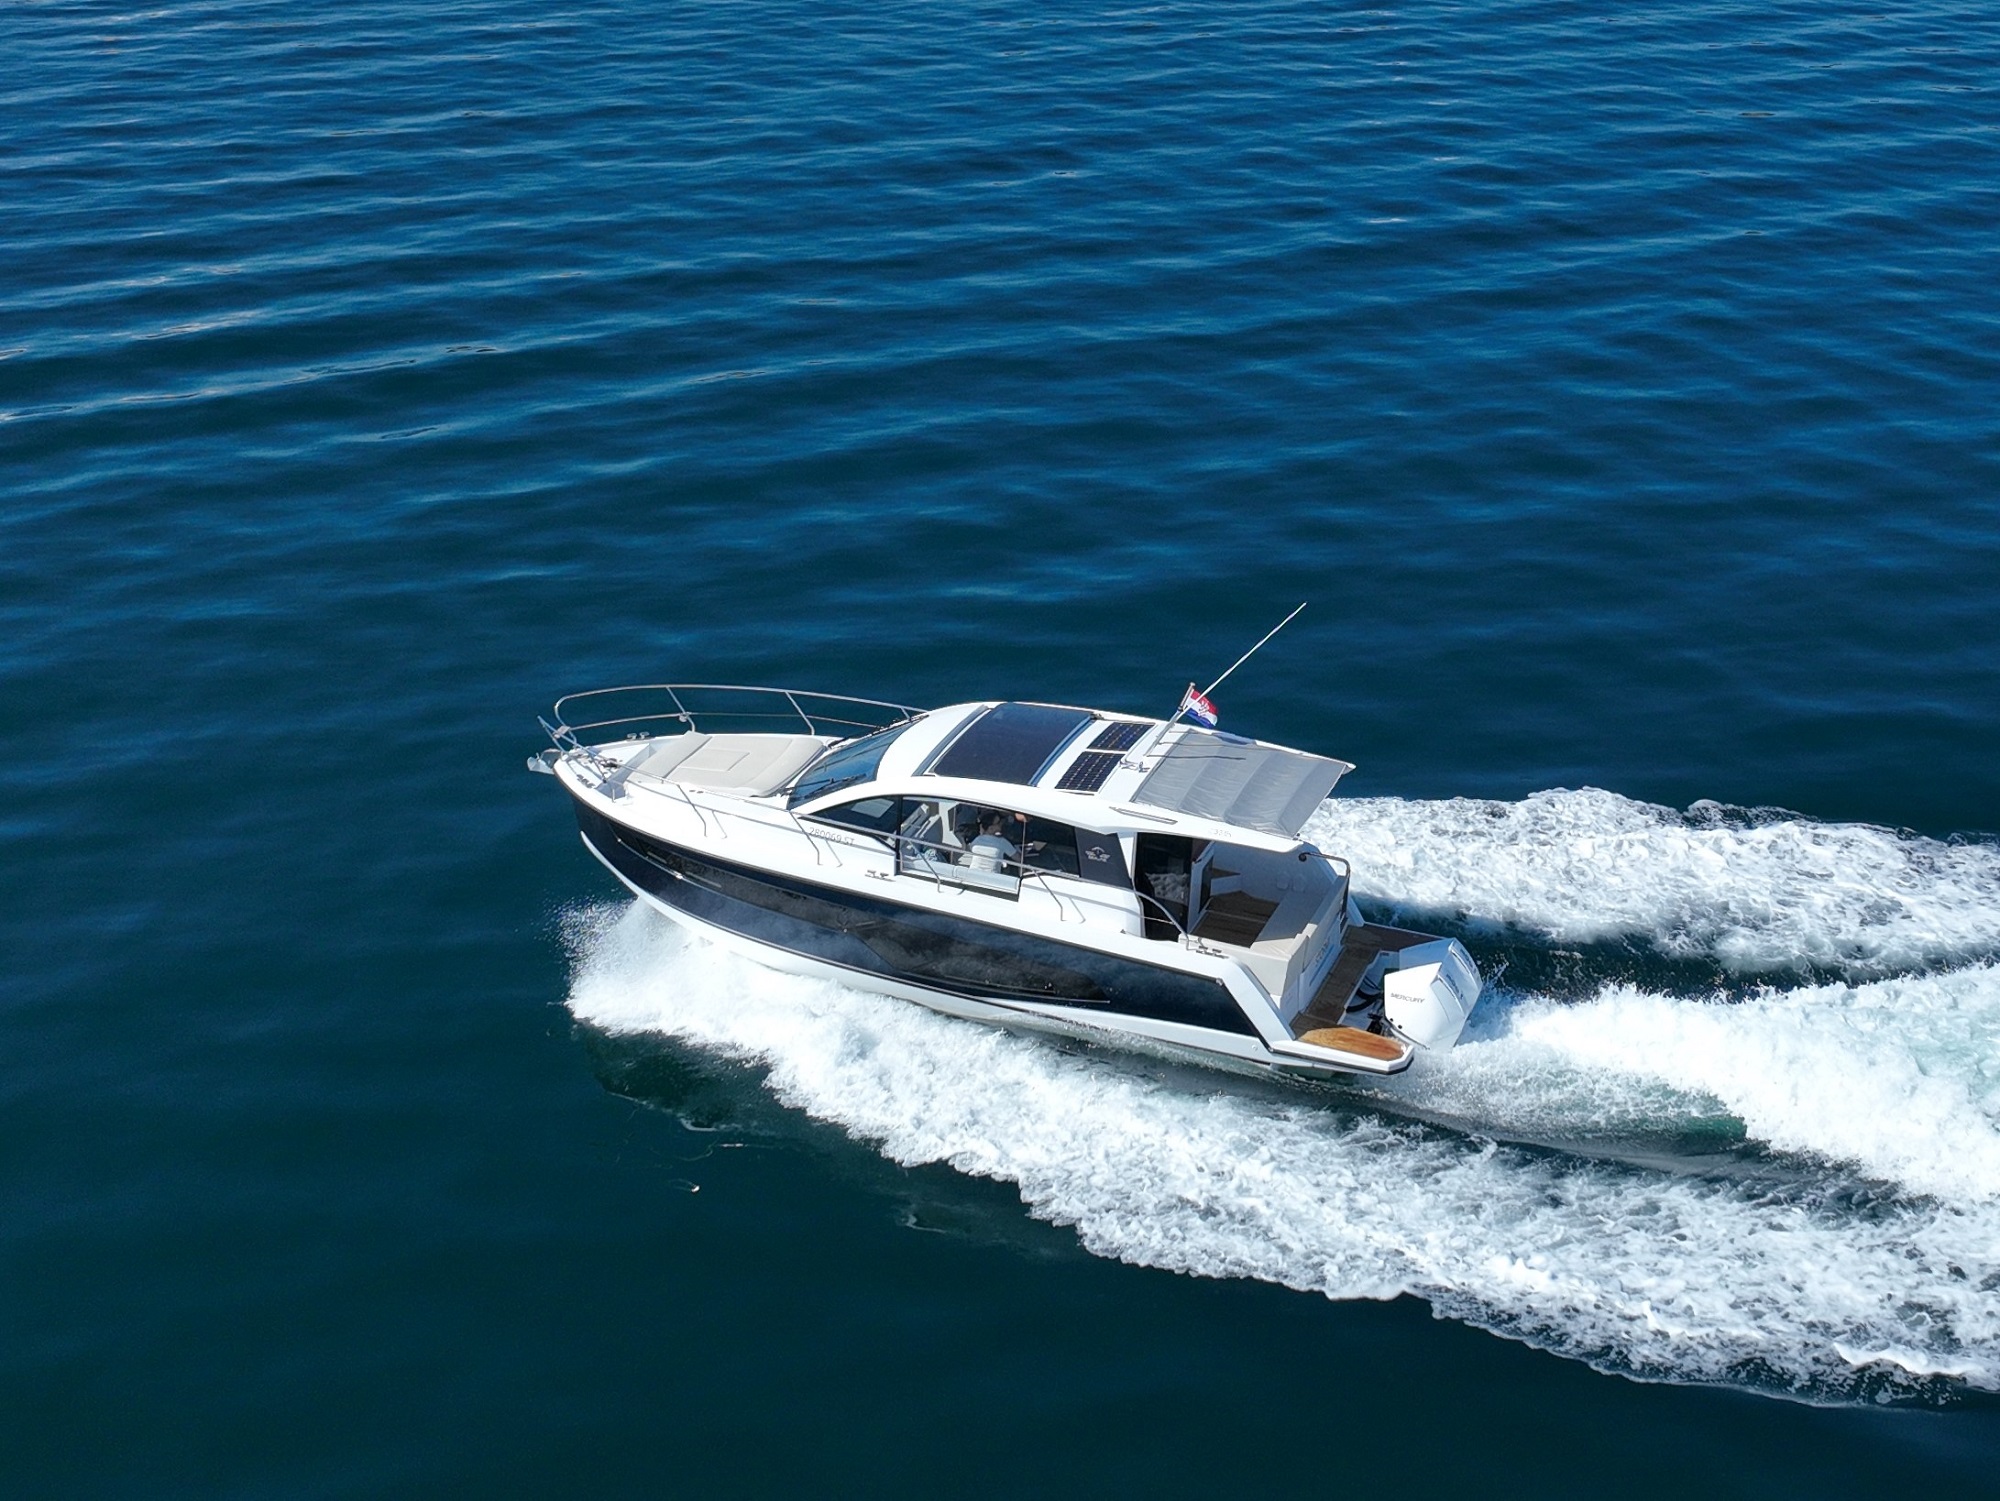 Motorni čoln Sealine C335V Split regija, Hrvaška 4